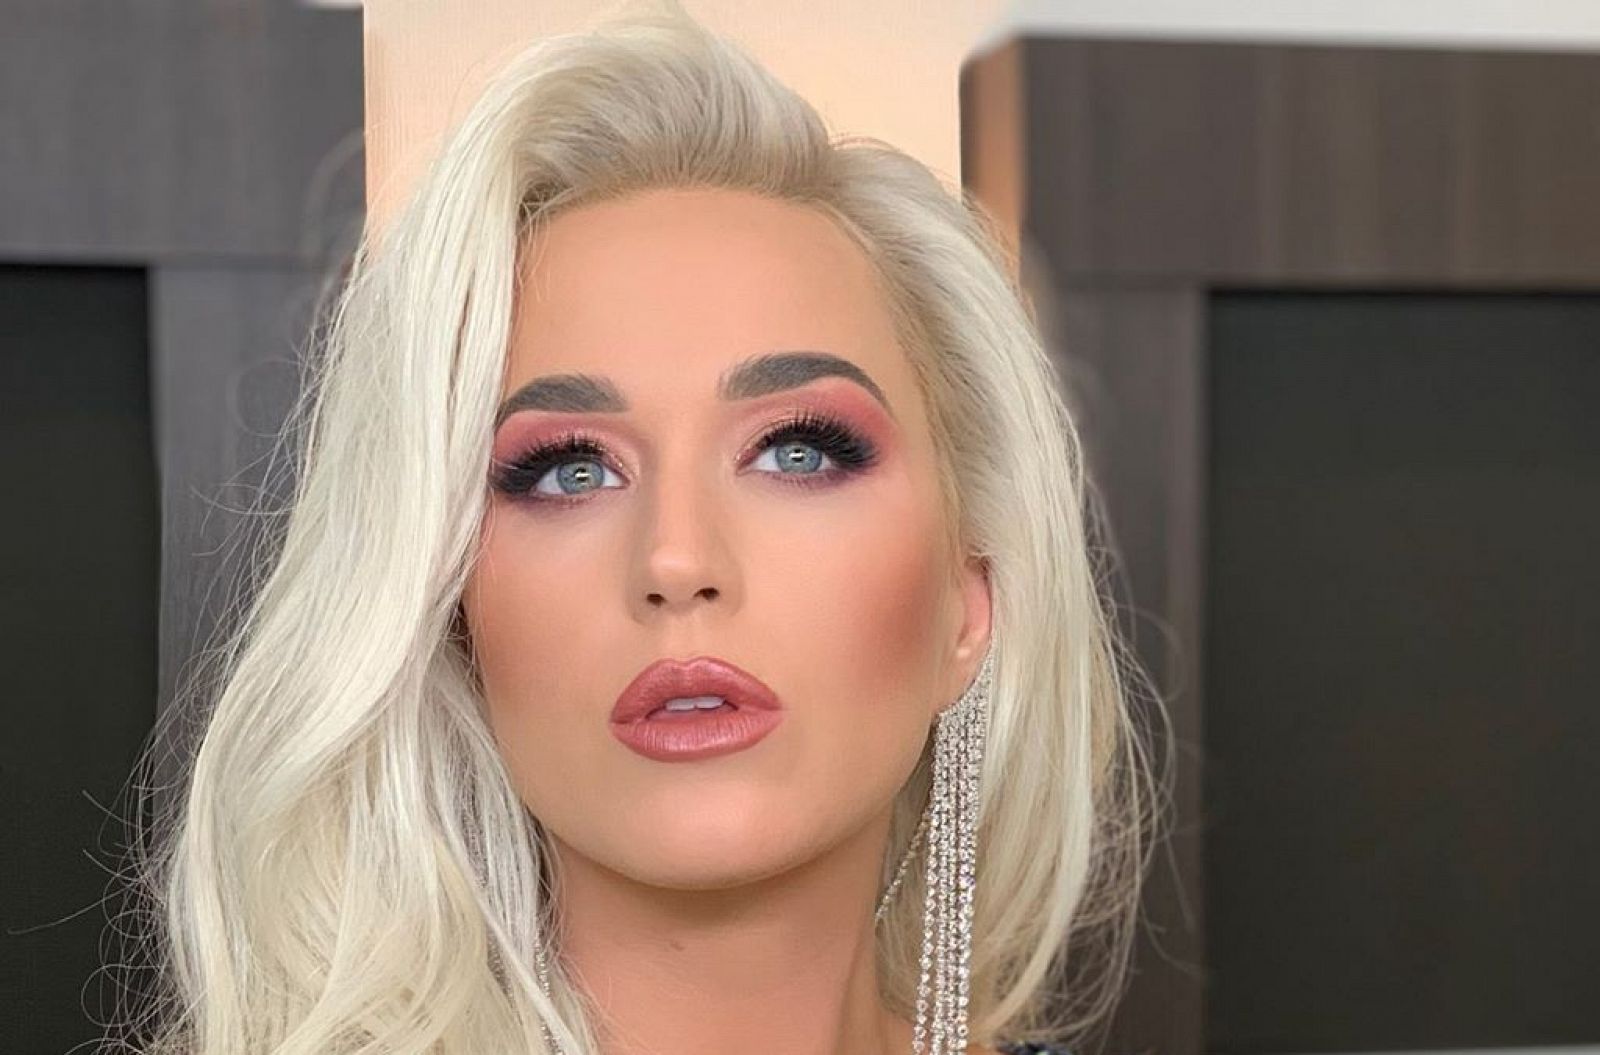 Corazón - El modelo Josh Kloss acusa a Katy Perry de acoso sexual